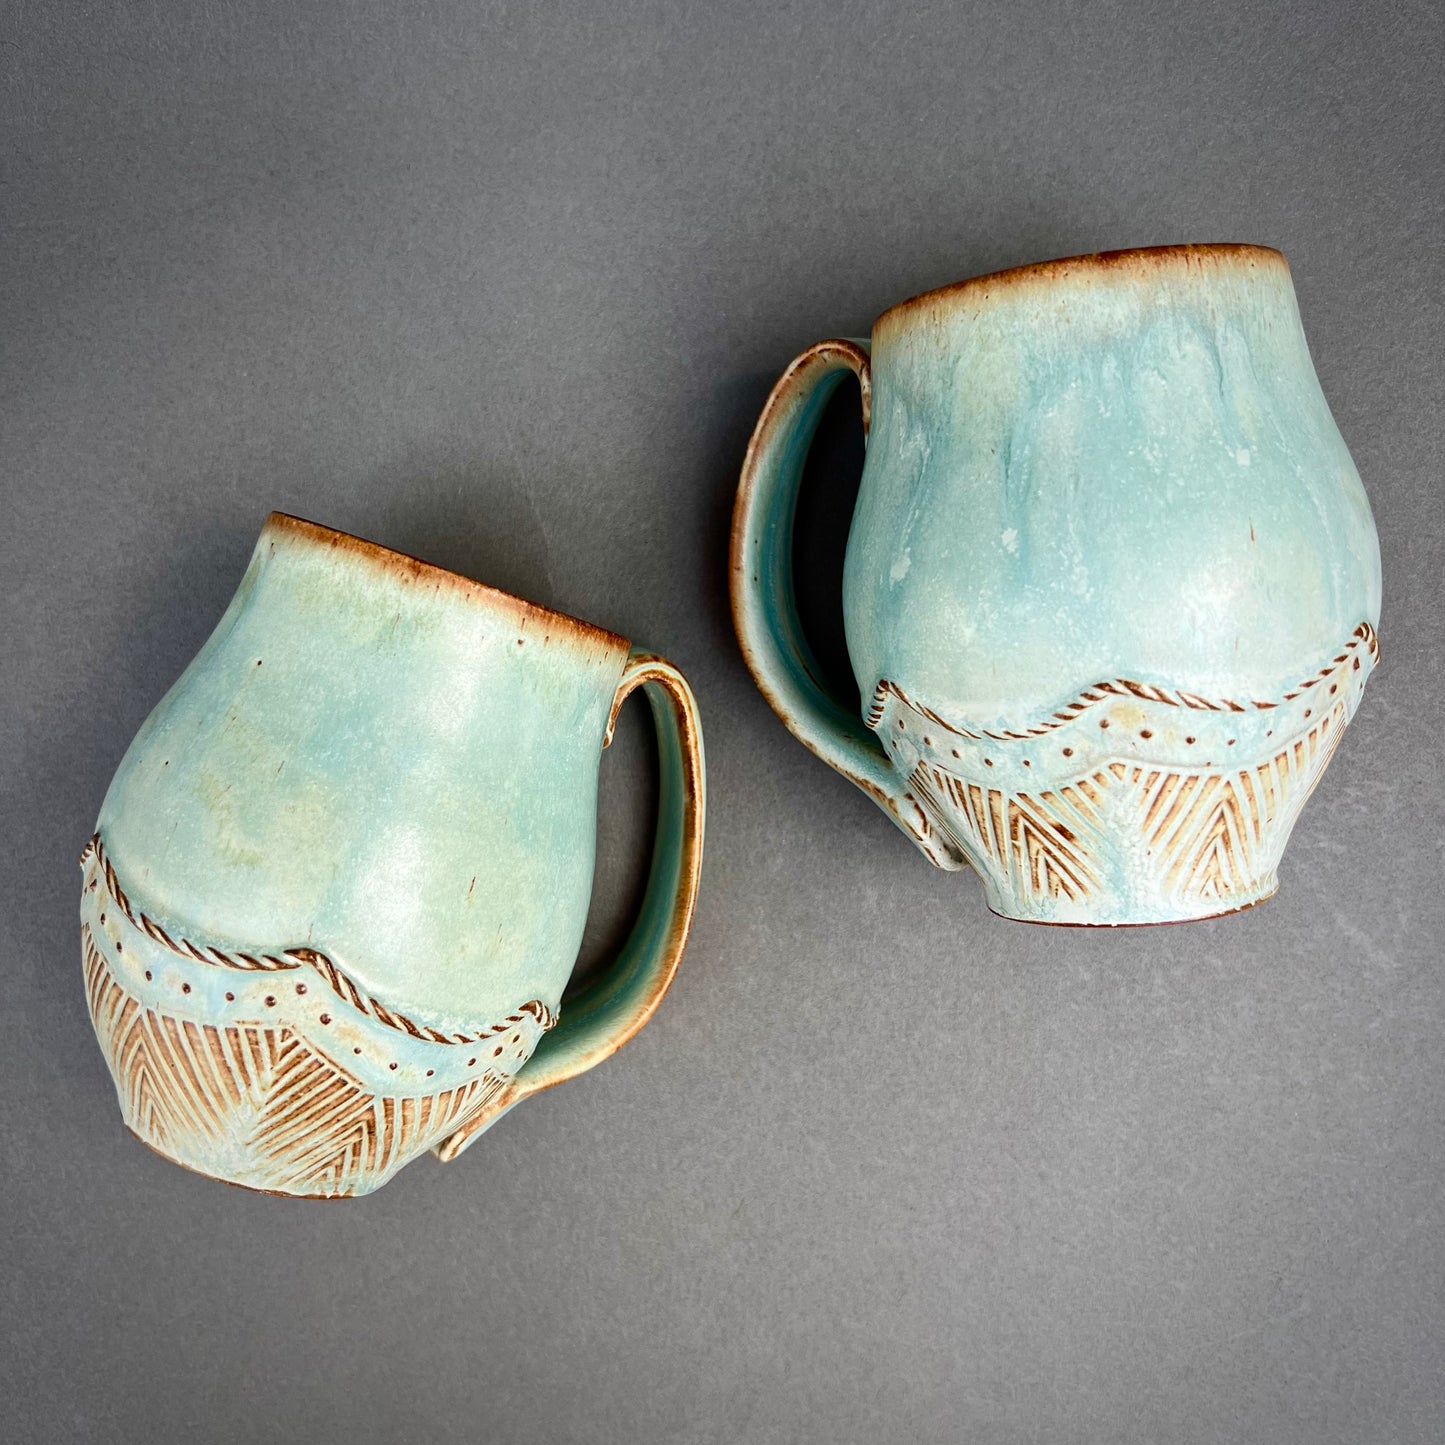 Pre-Order: Copper Coil Decorated Mug